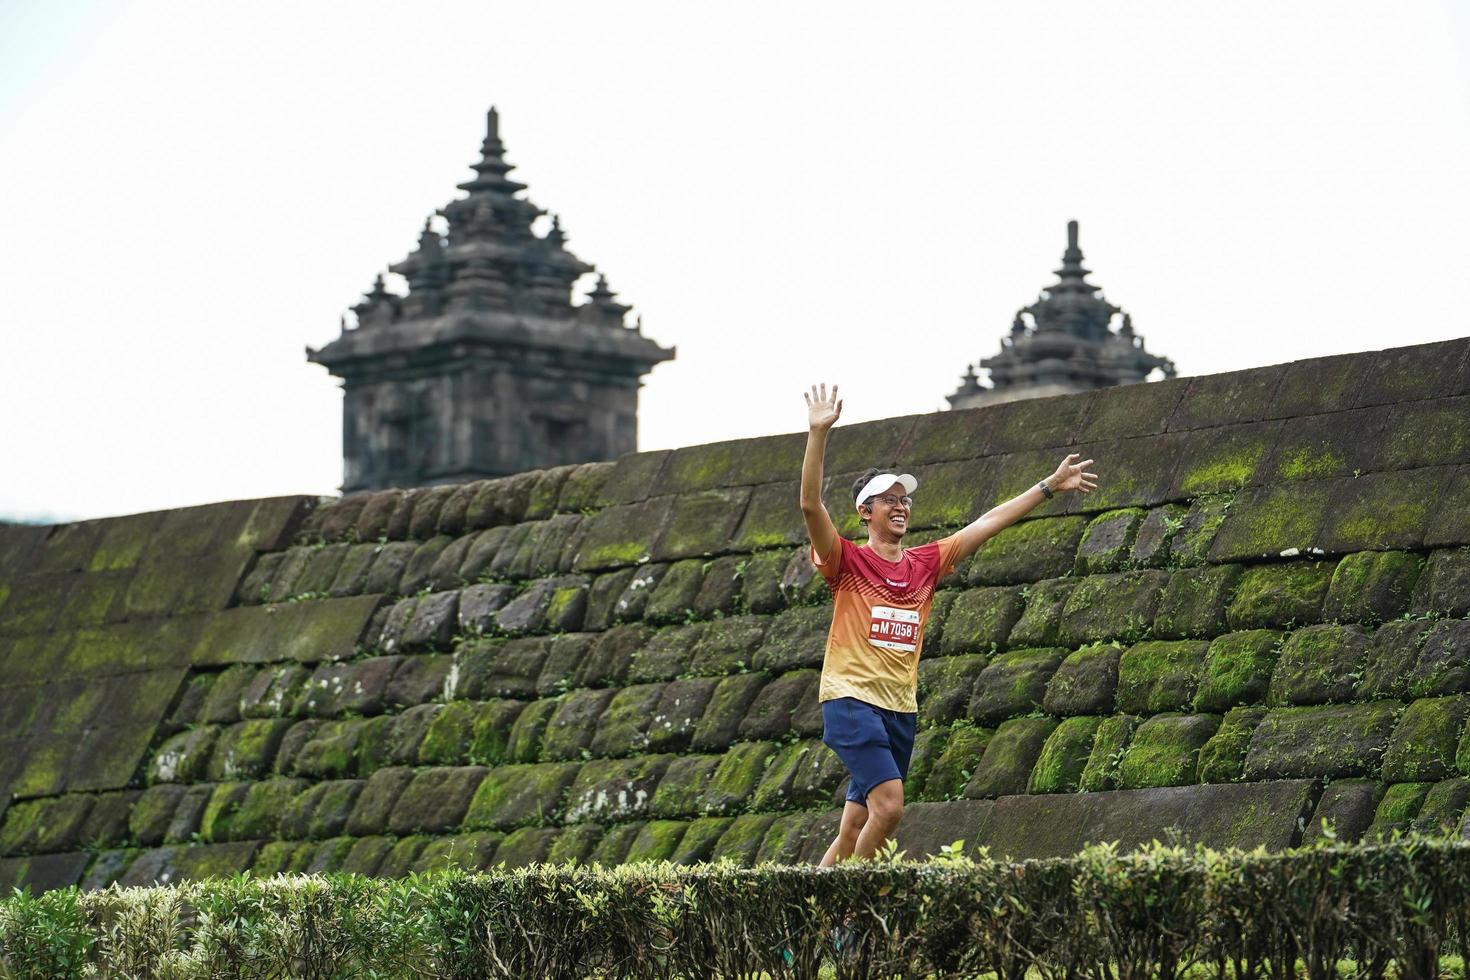 yogyakarta, indonésie - 20 novembre 2022 le contingent du temple sleman a passé la route panoramique du temple barong, ils ont participé à un concours de course à pied. photo